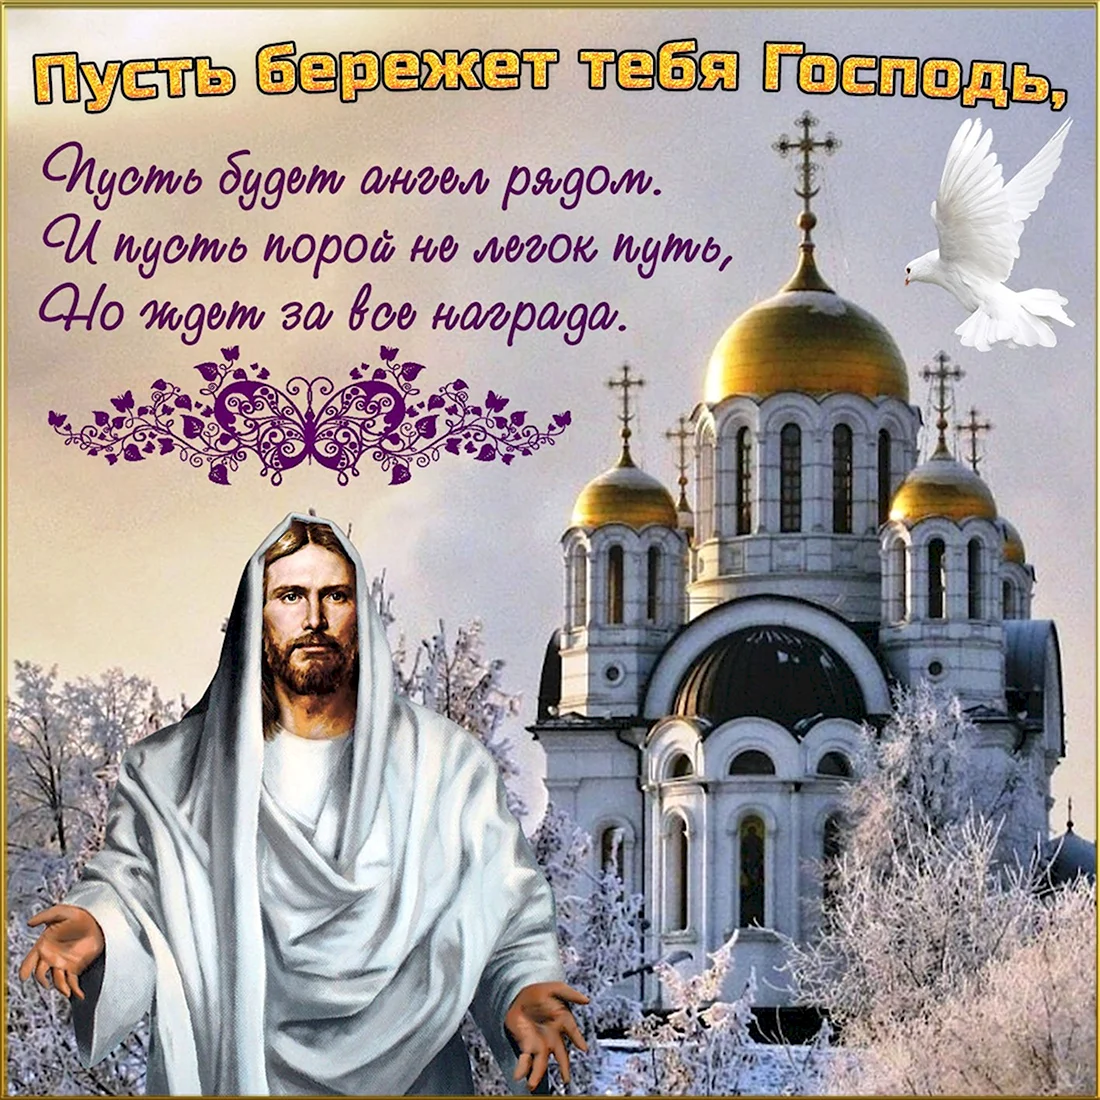 Православное поздравление с днём рождения. Поздравление на праздник